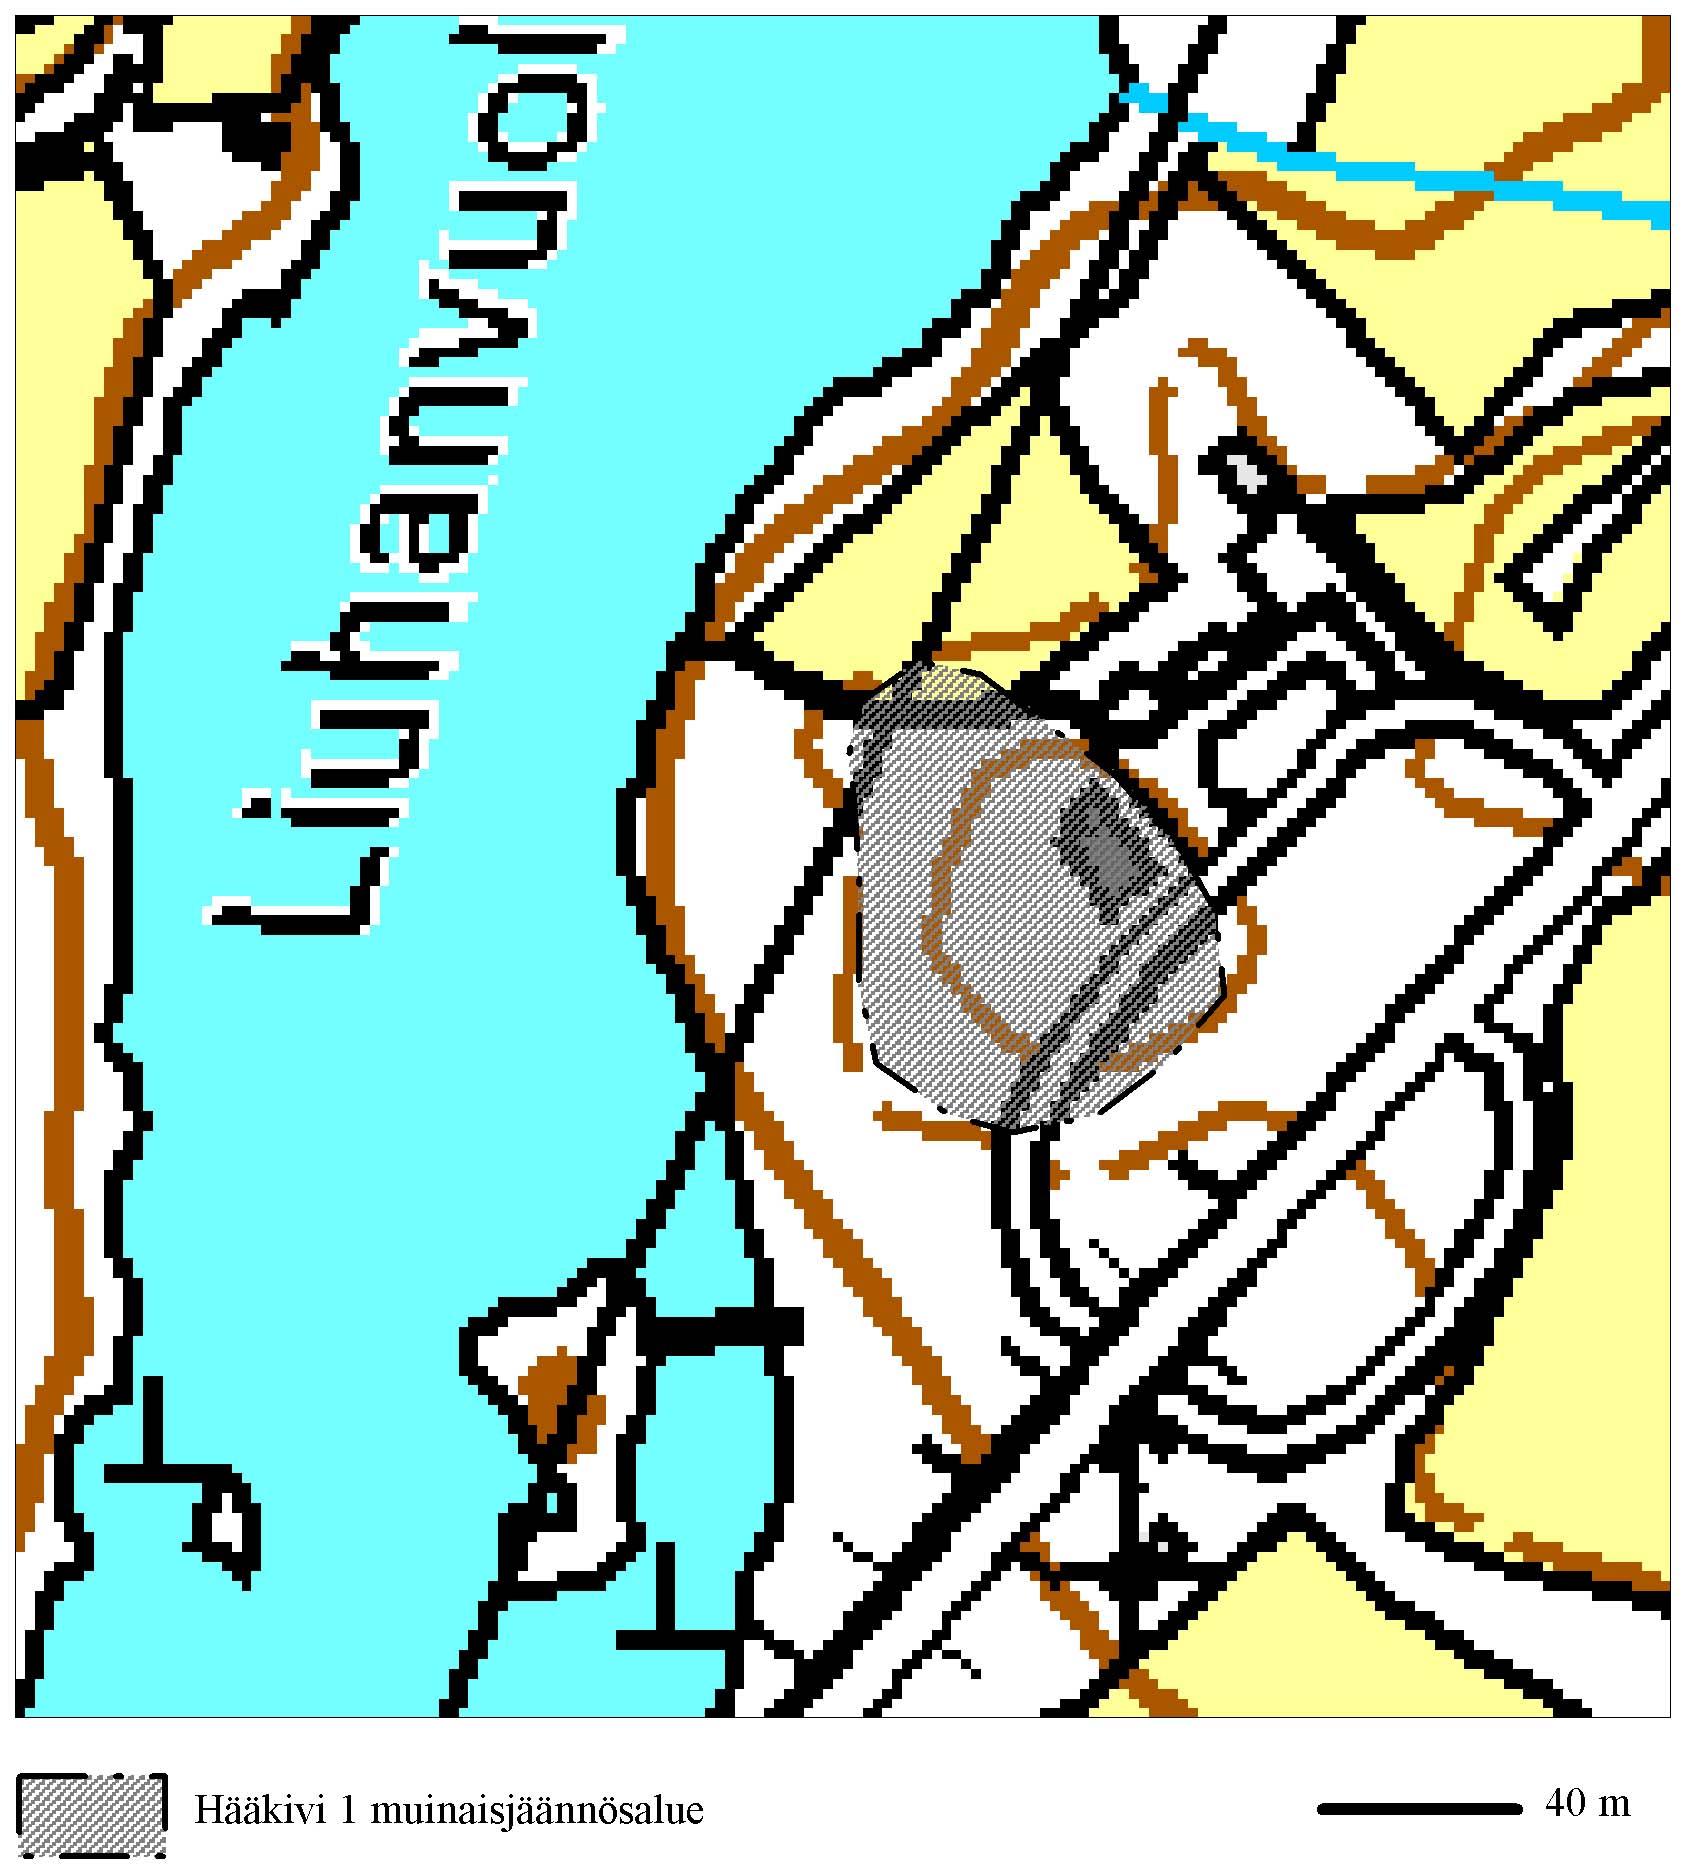 Tiedossa olevat maankäyttösuunnitelmat Alueelle ollaan laatimassa uutta osayleiskaavaa. Lähistön kohteet Hääkivi I (asuinpaikka) 190 metriä länsi lounaaseen. Digitaalikuvat KYY 21: 3 4 Diar. 24.11.